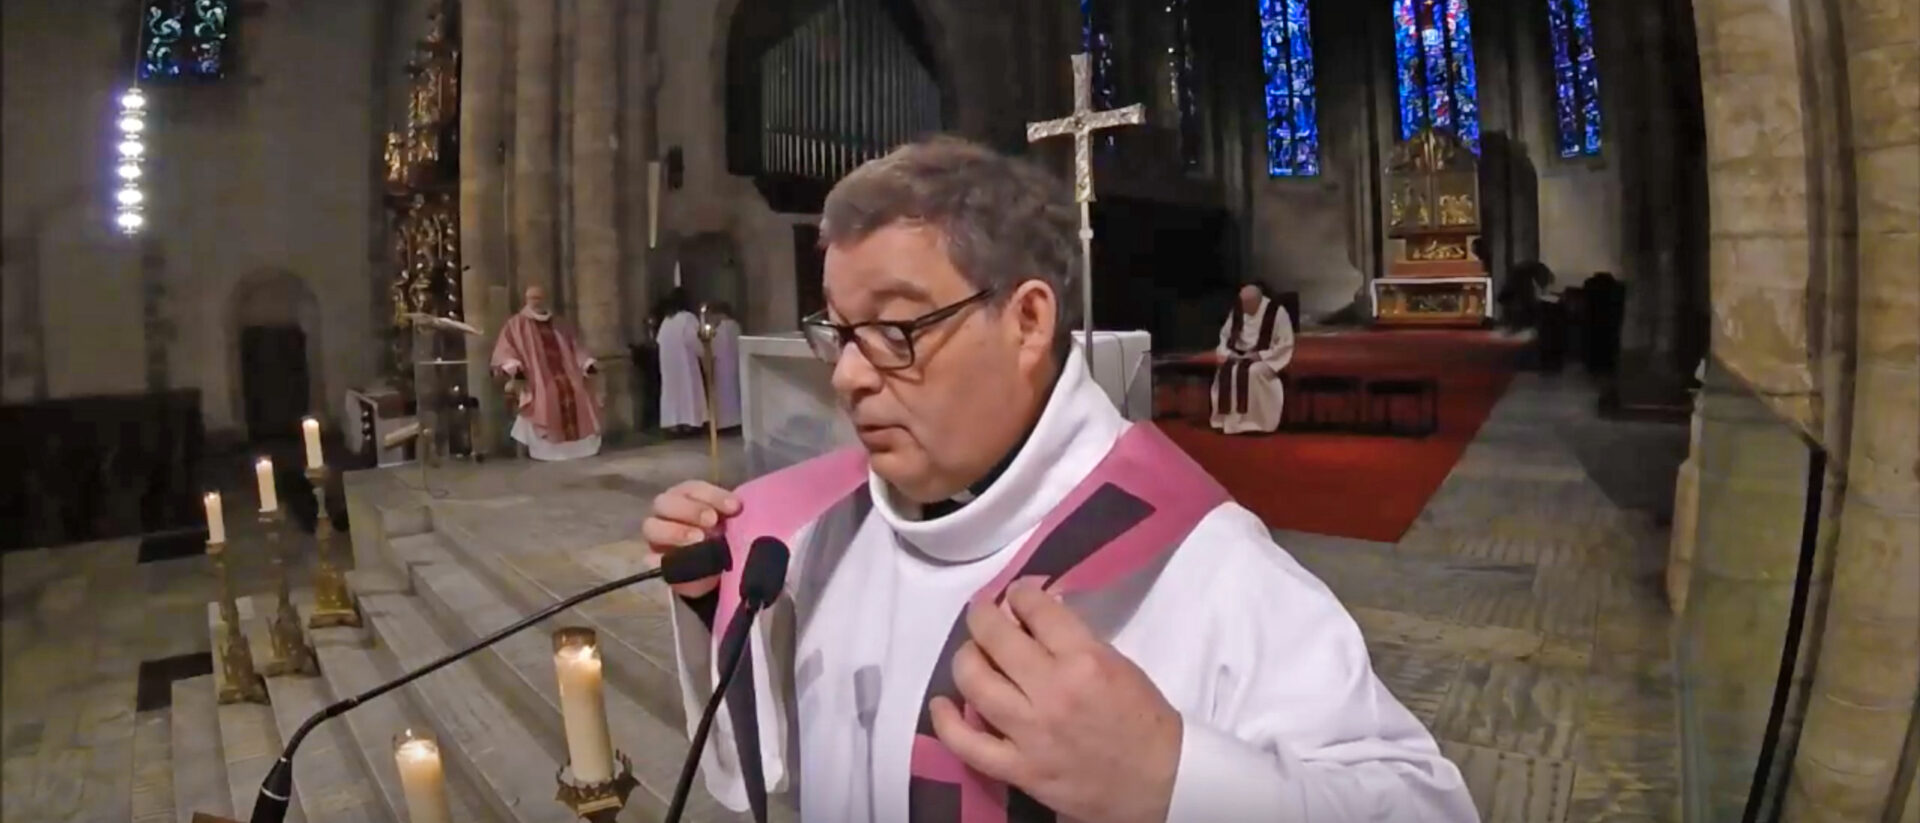 L'habit rose – violet mêlé de blanc – accentue la réjouissance de Pâques. Ici l'abbé Girard à la cathédrale de Sion en 2018 | © Youtube